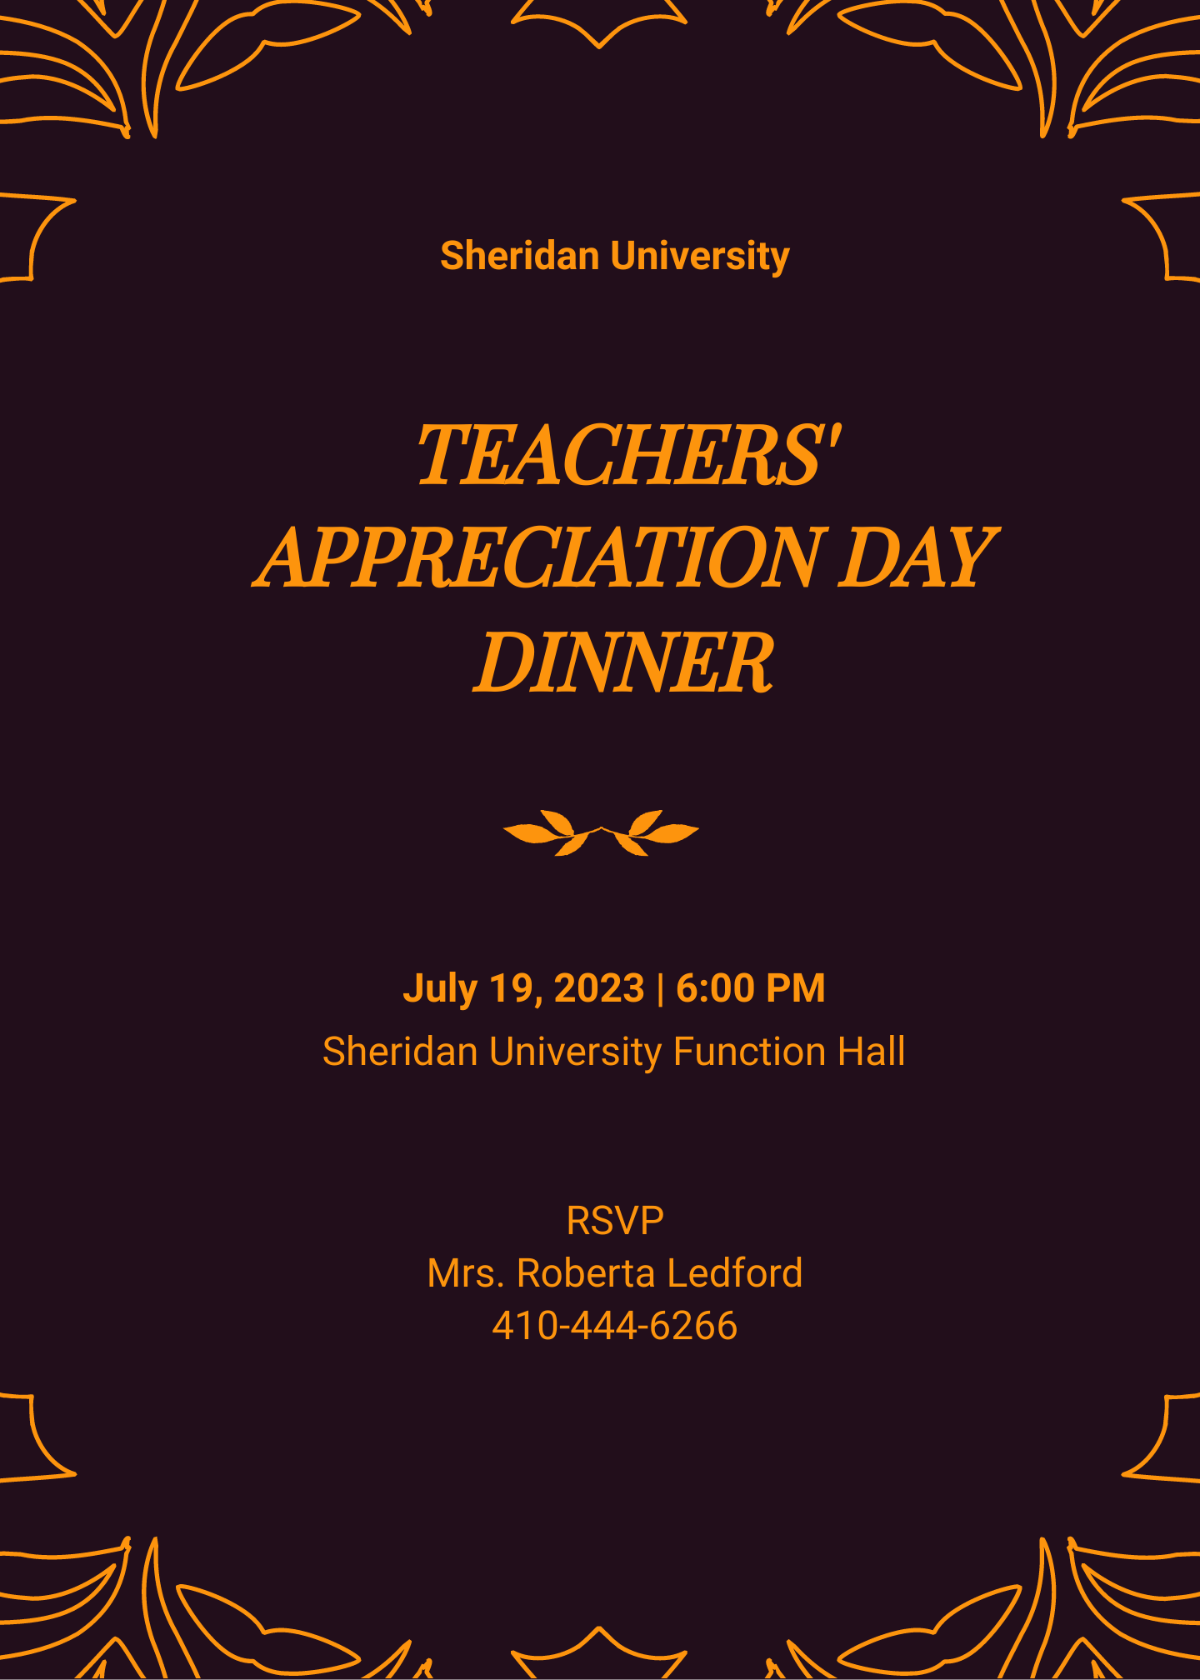 Teacher Appreciation Dinner Invitation